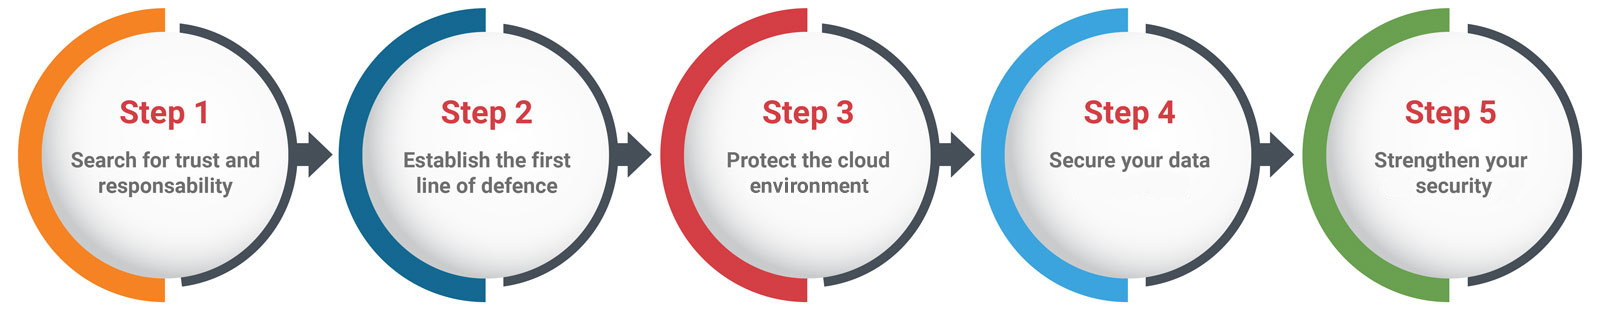 Darstellung der fünf Phasen von Easy Cloud Security